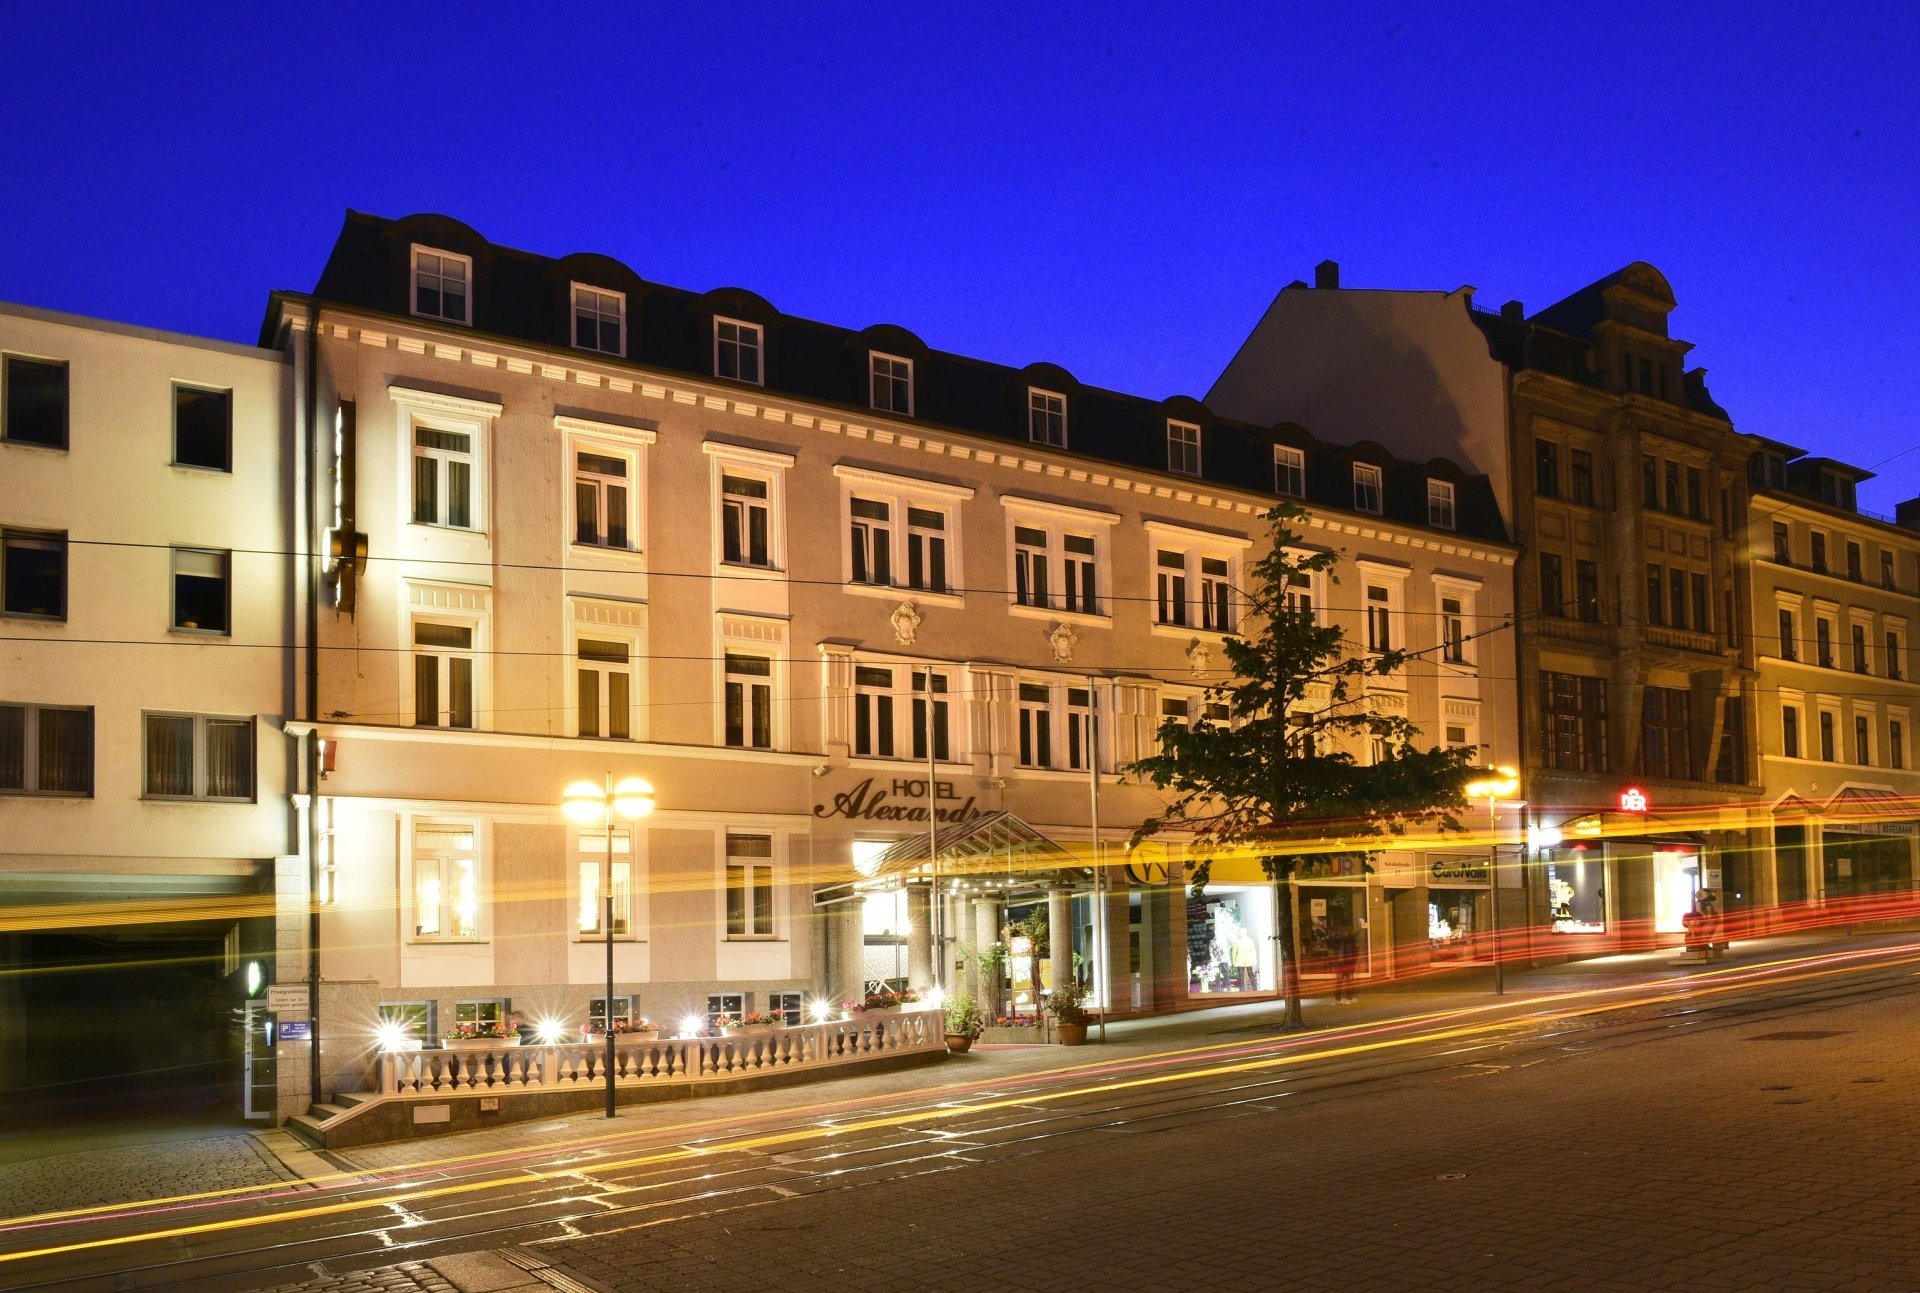 2 Tage Babygetuschel® – Hotel Alexandra (4 Sterne) in Plauen, Sachsen inkl. Halbpension